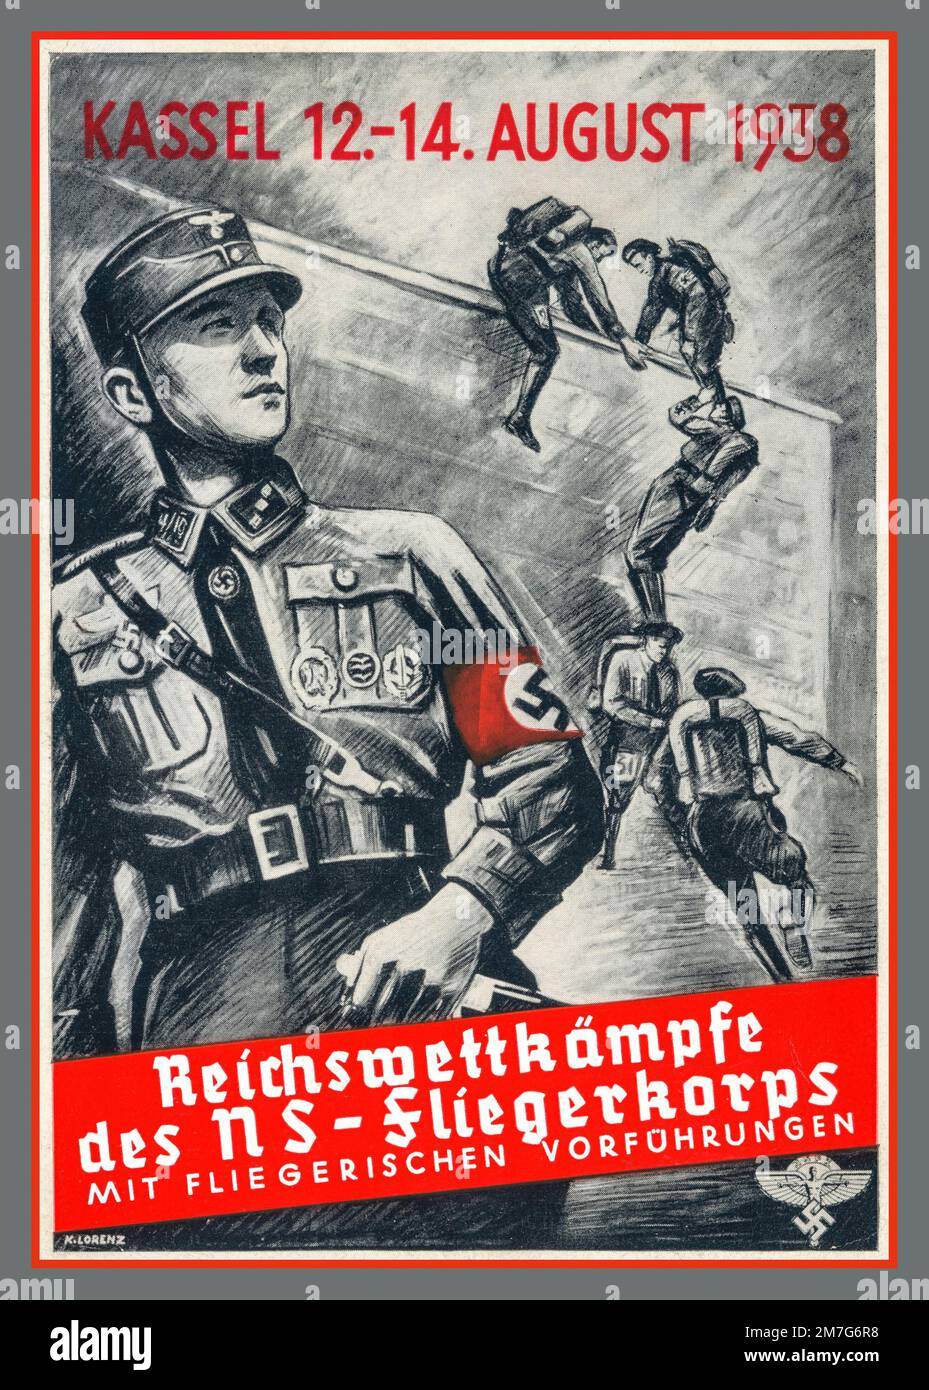 Nazi NS-FLIEGERKORPS Recruitment Recruiting Nazi Poster 1938 Nazi Germany 'mit fliegerischen vorfuhrungen' 'with flying demonstrations'  'empire competitions' Reichswettkämpfe Stock Photo